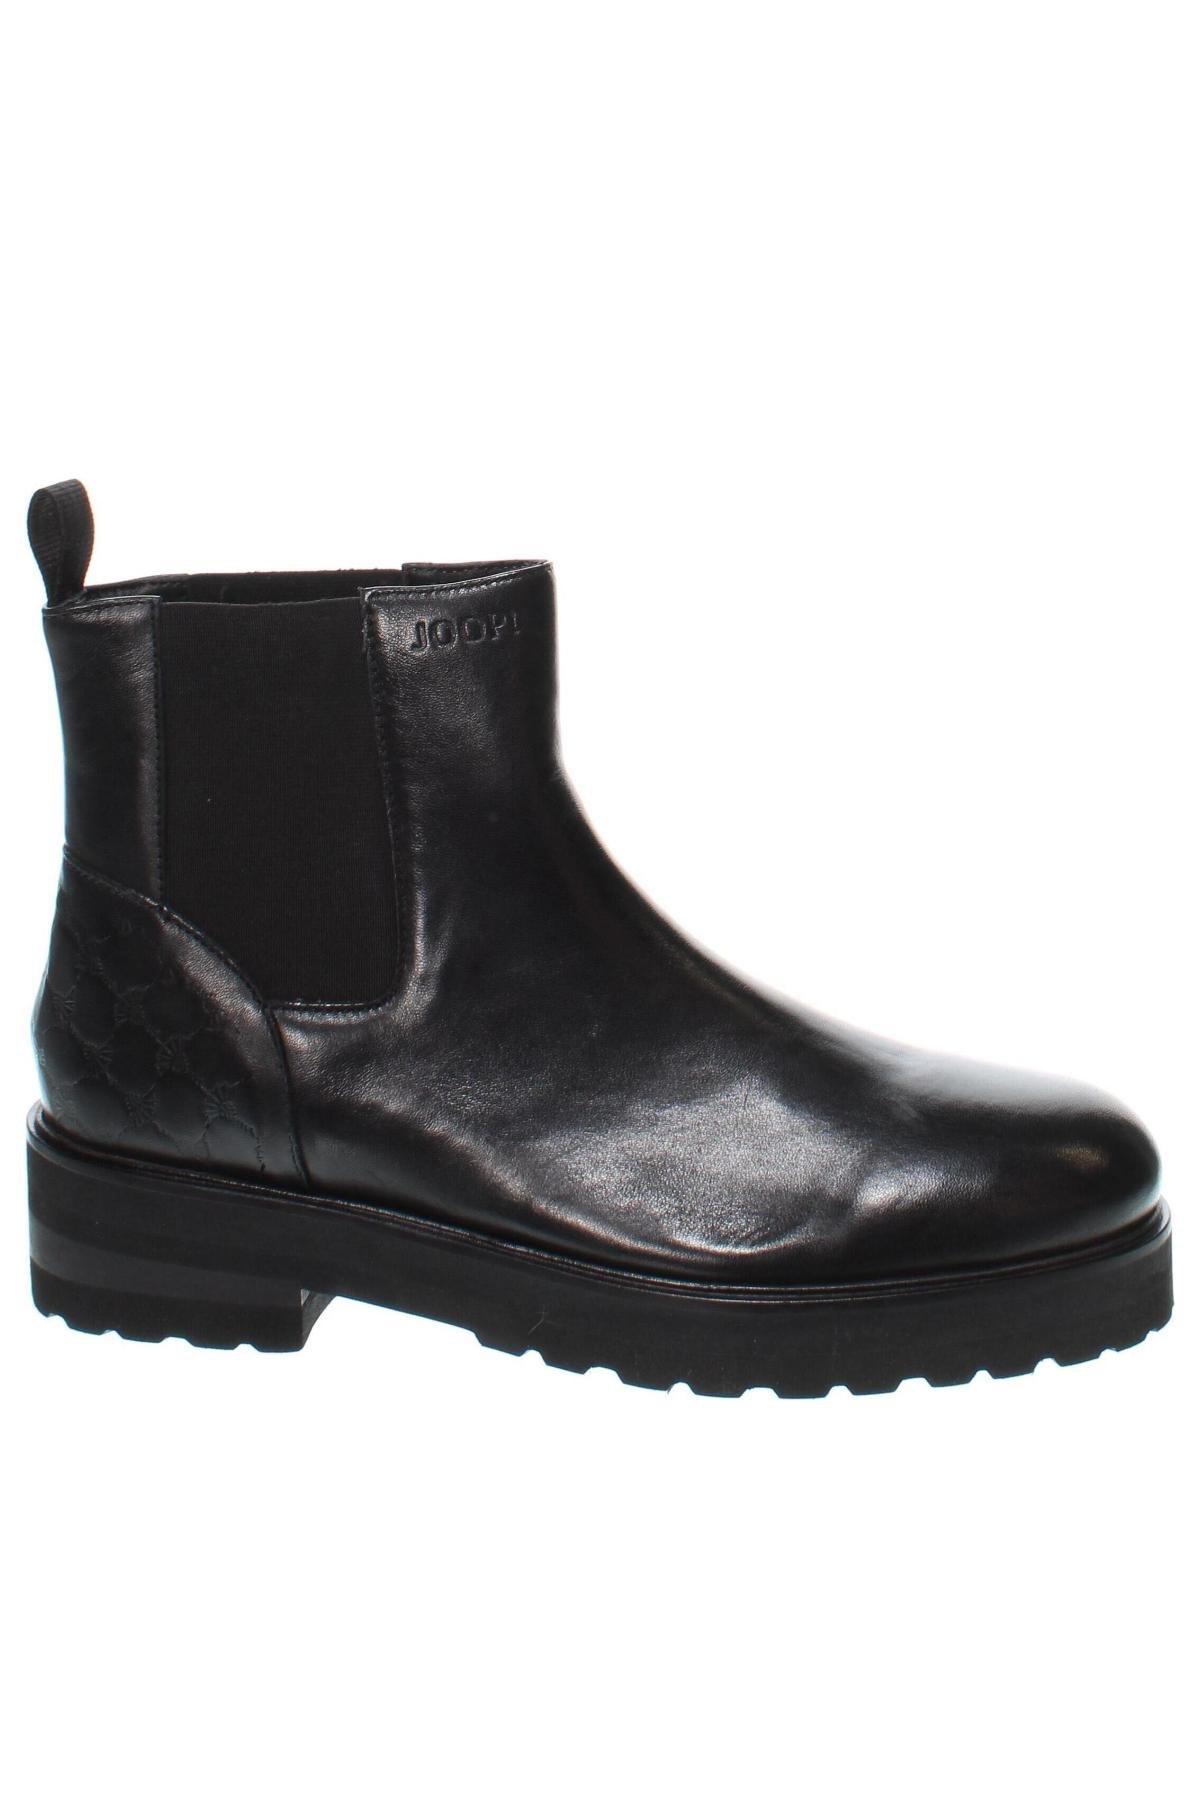 Ανδρικά παπούτσια Joop!, Μέγεθος 40, Χρώμα Μαύρο, Τιμή 181,40 €